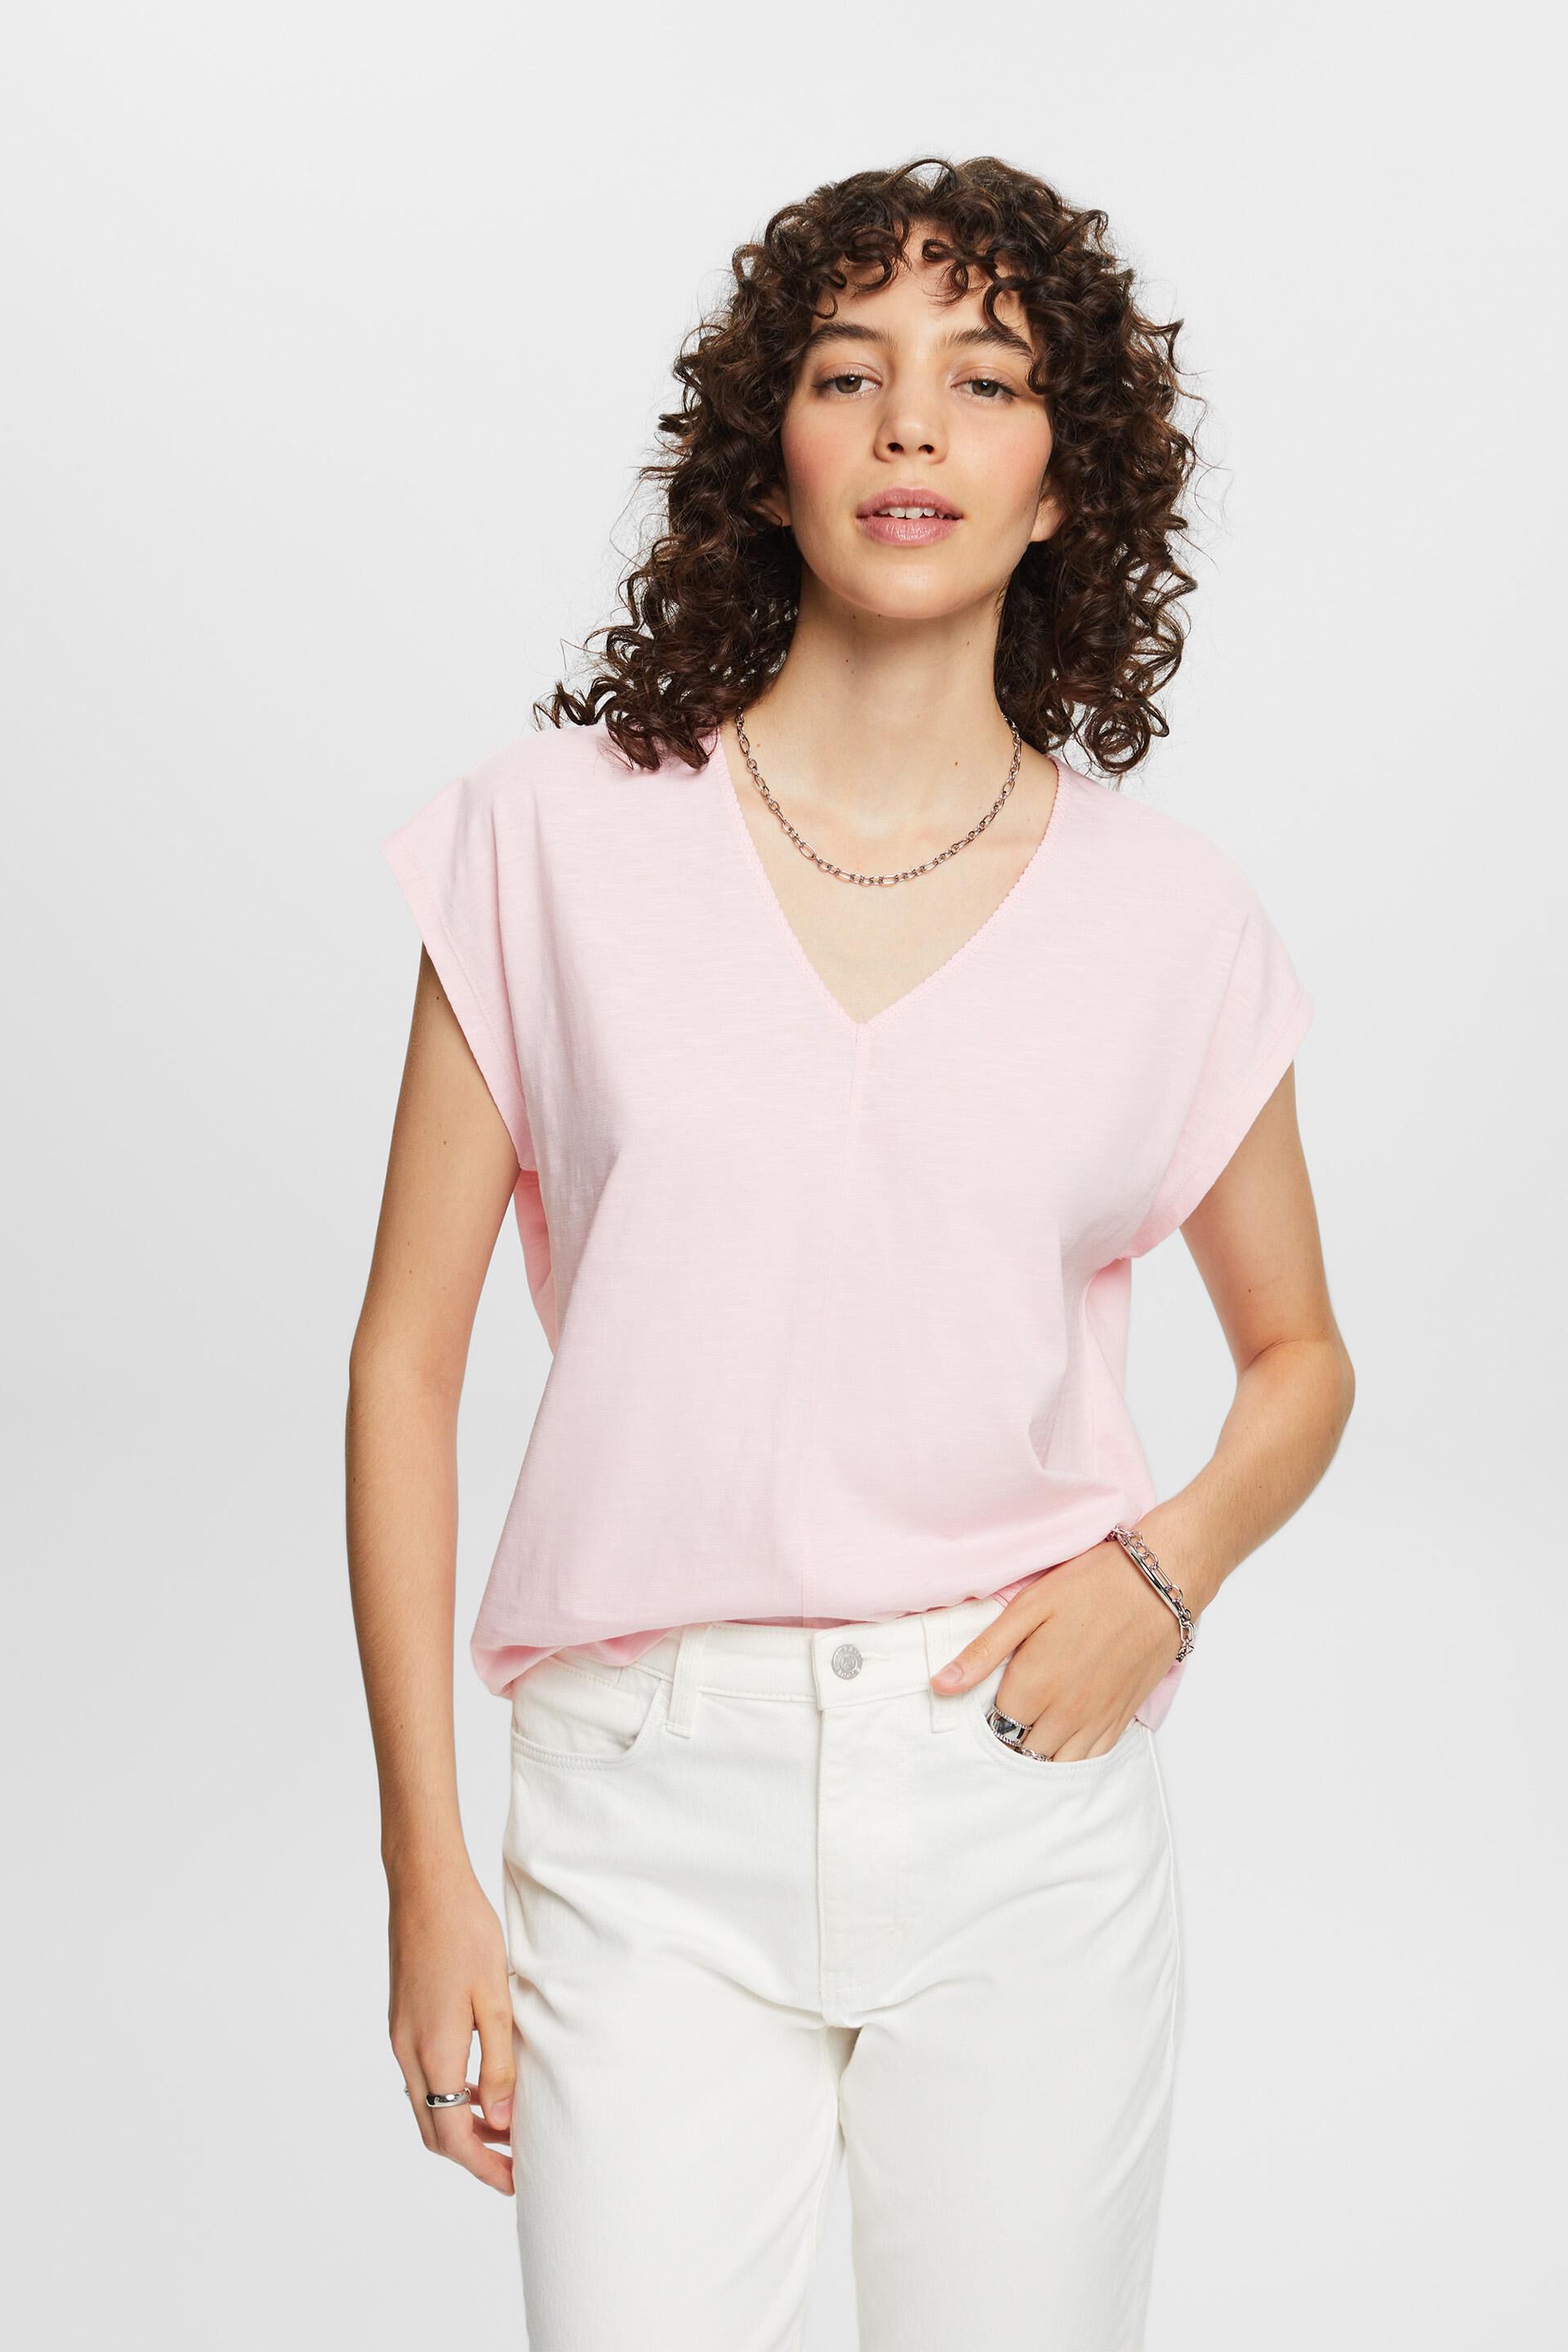 Esprit 100% stitch, T-shirt decorative V-neck cotton with